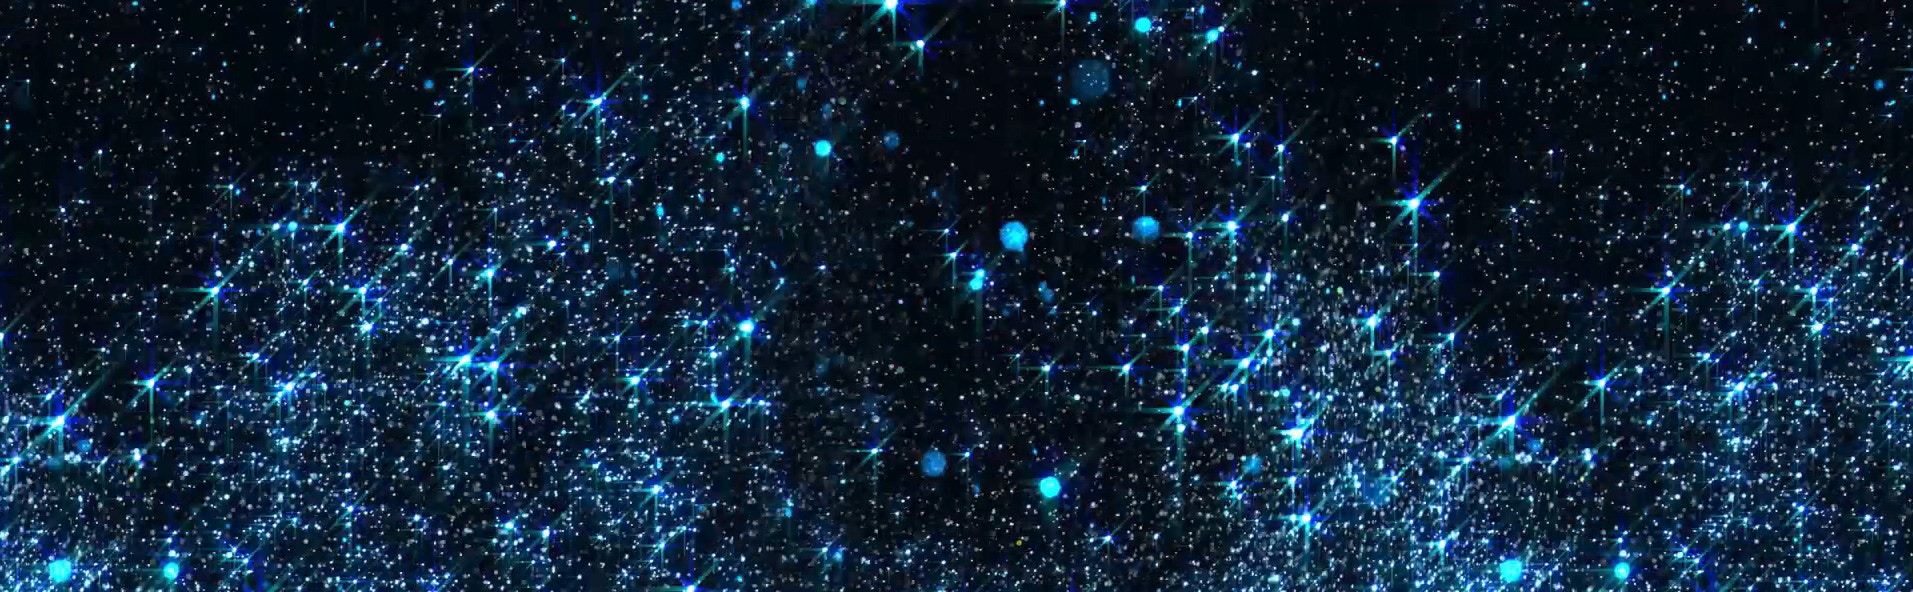  Michael Bublé Love blue particles